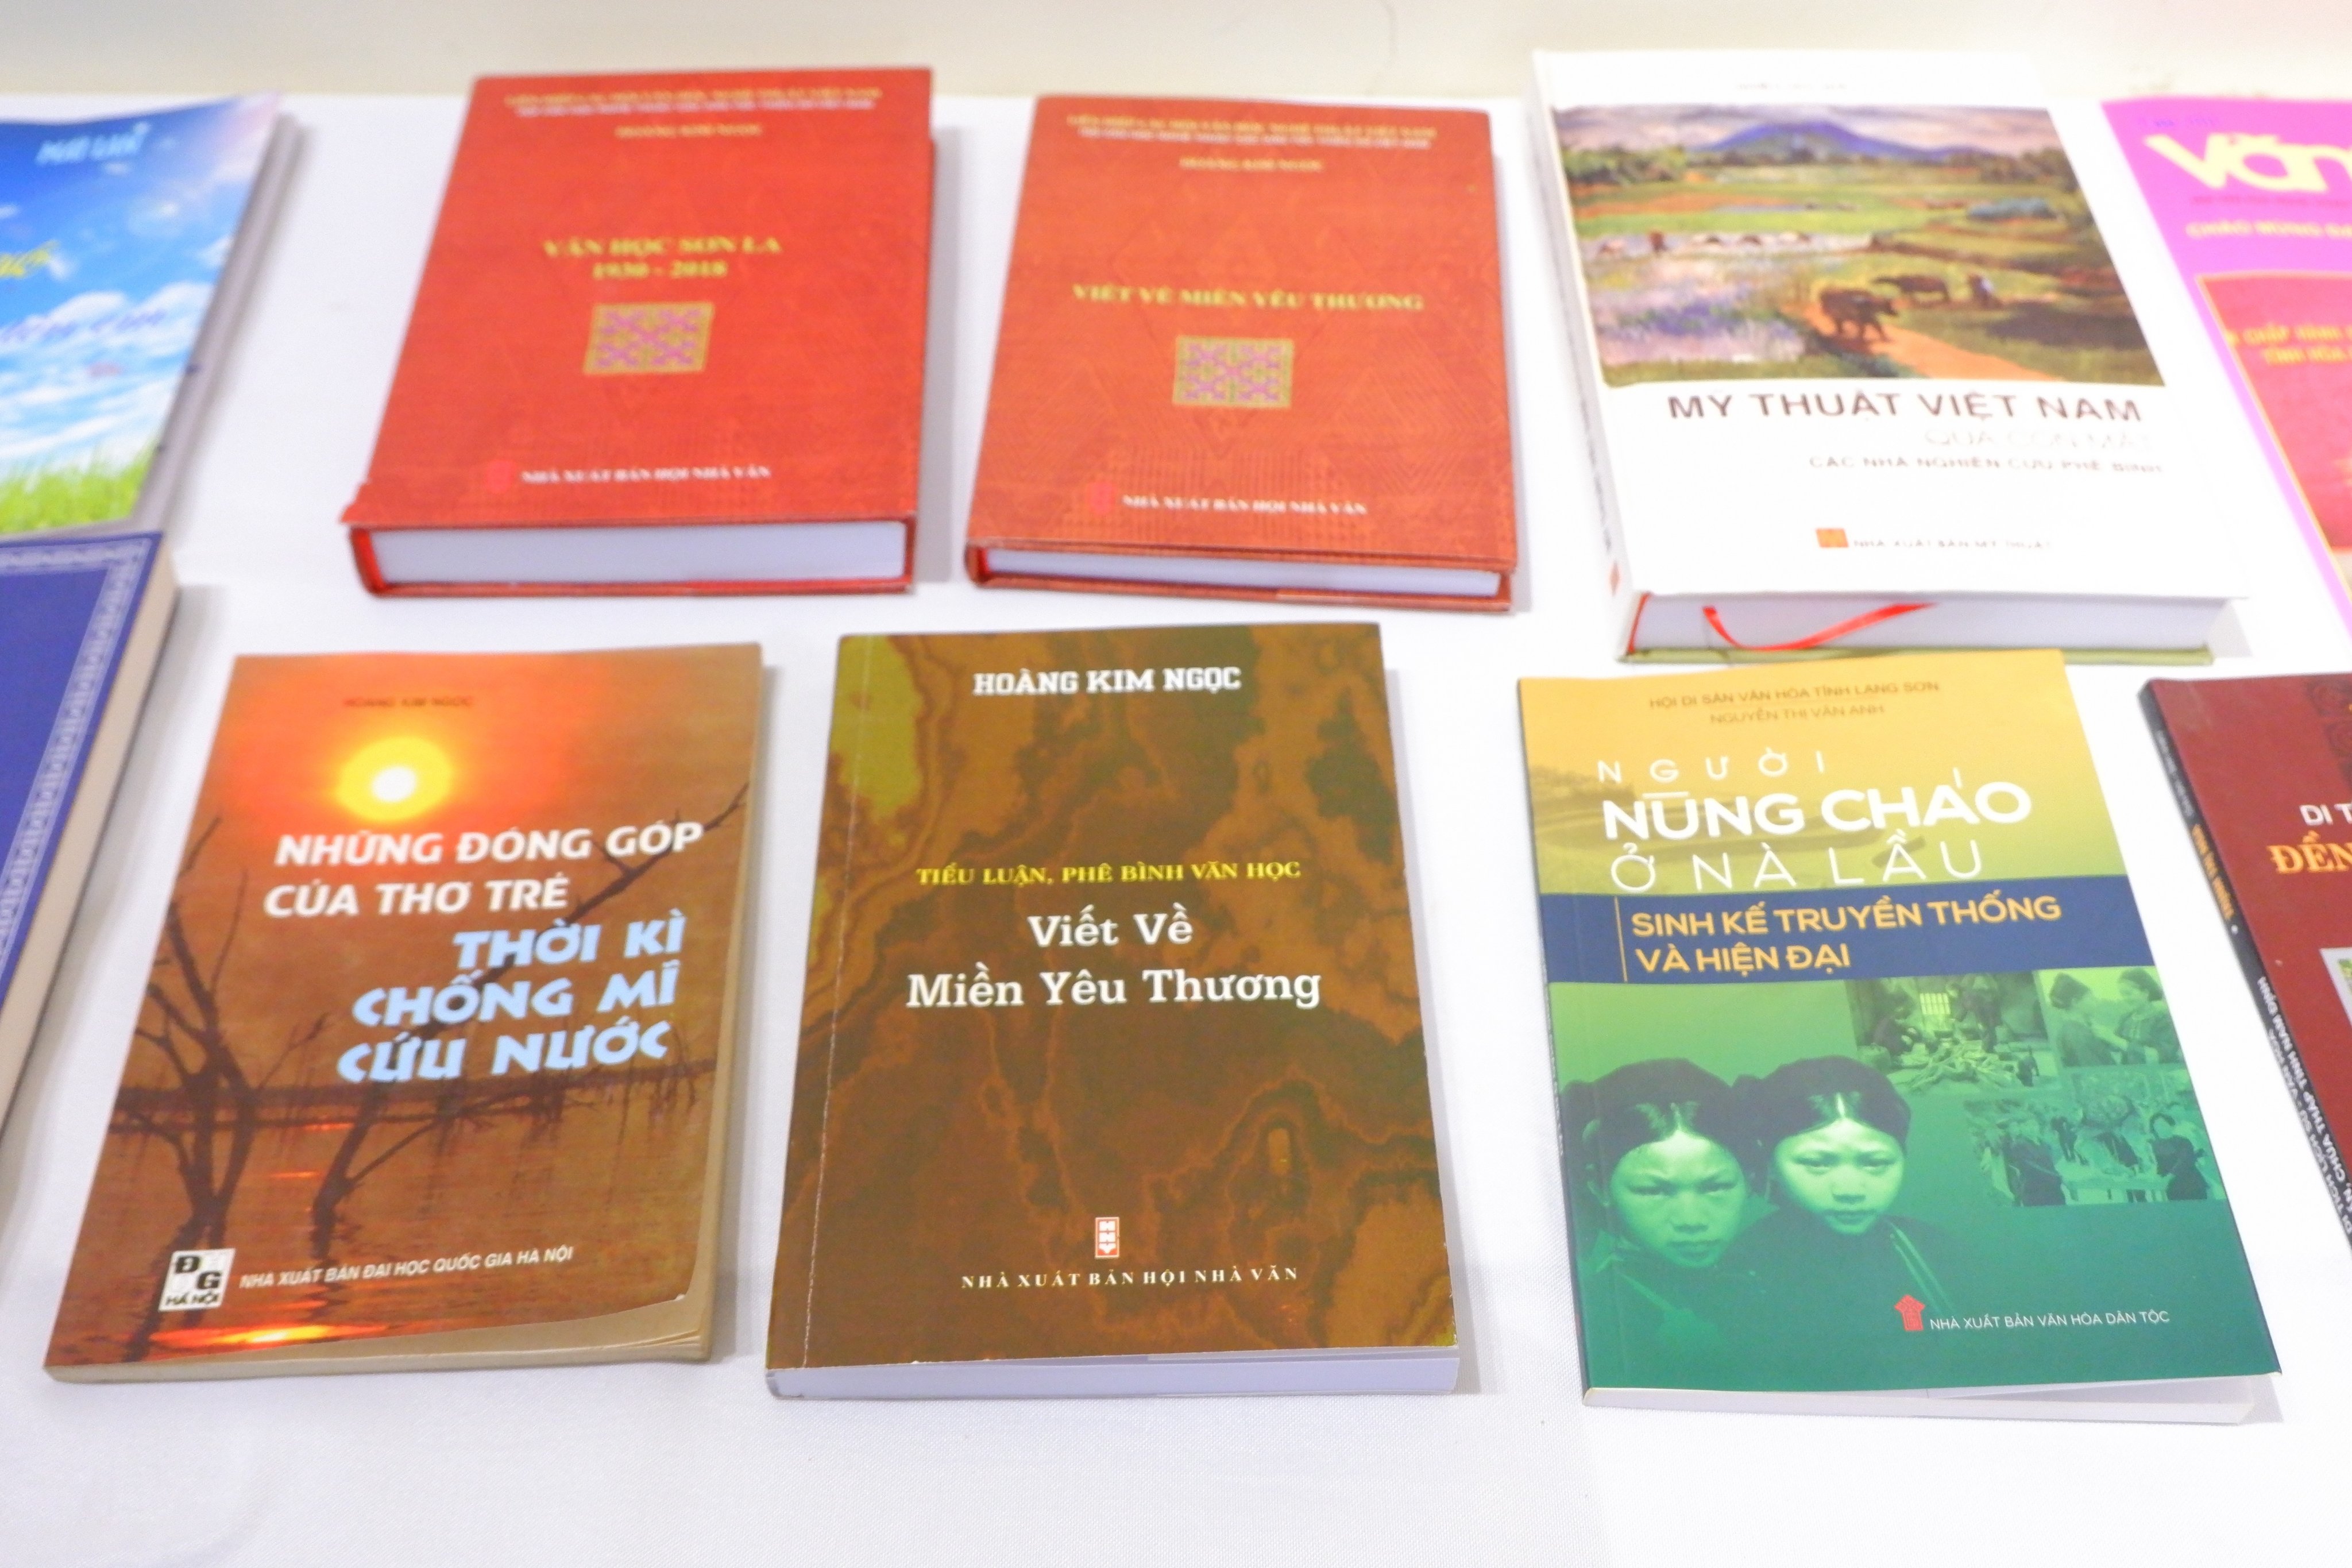 49 tác giả tham dự Trại viết Lý luận phê bình Văn học nghệ thuật Khóa VI Khu vực phía Bắc - 5